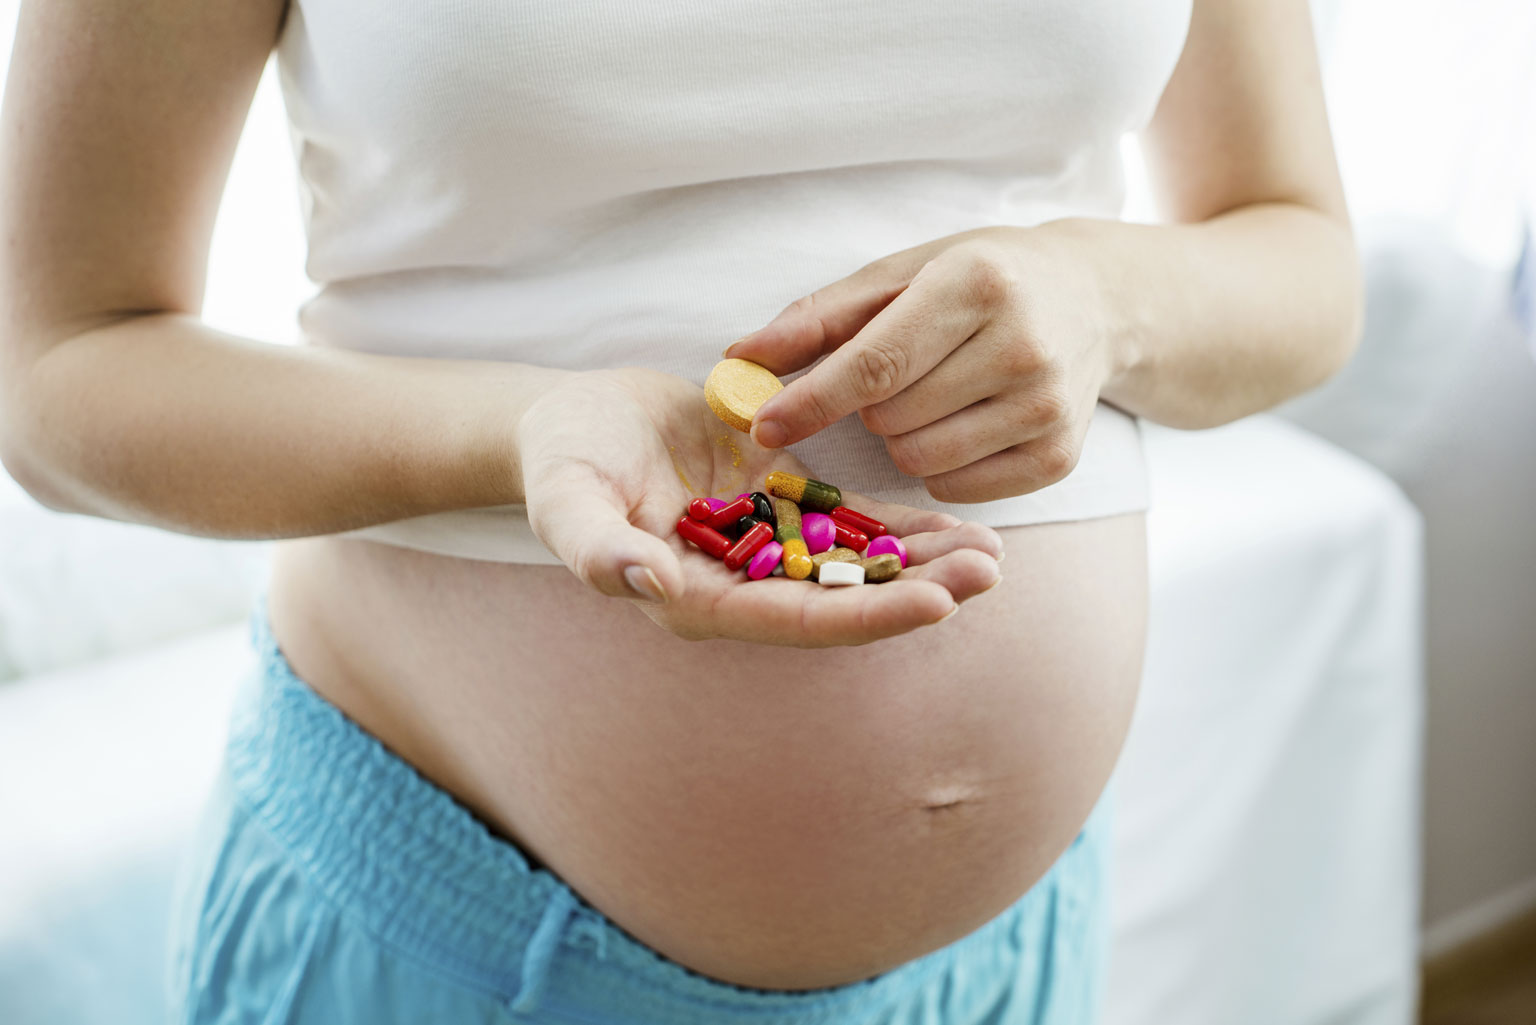 Особенности применения лекарственных средств во время беременности. какие лекарства опасно принимать беременным